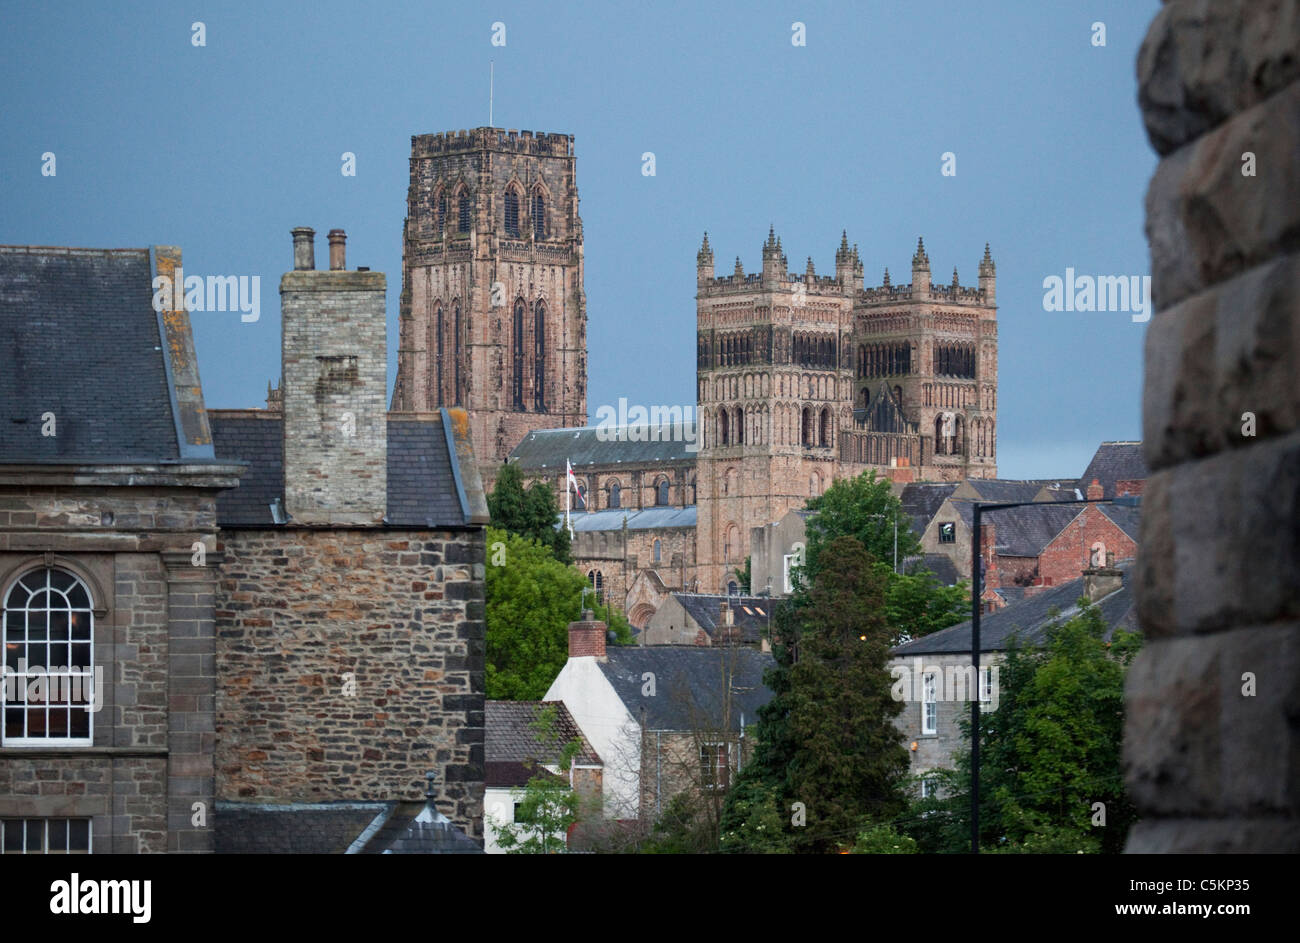 Cathédrale de Durham, les tours du NW, Durham, England, UK Banque D'Images